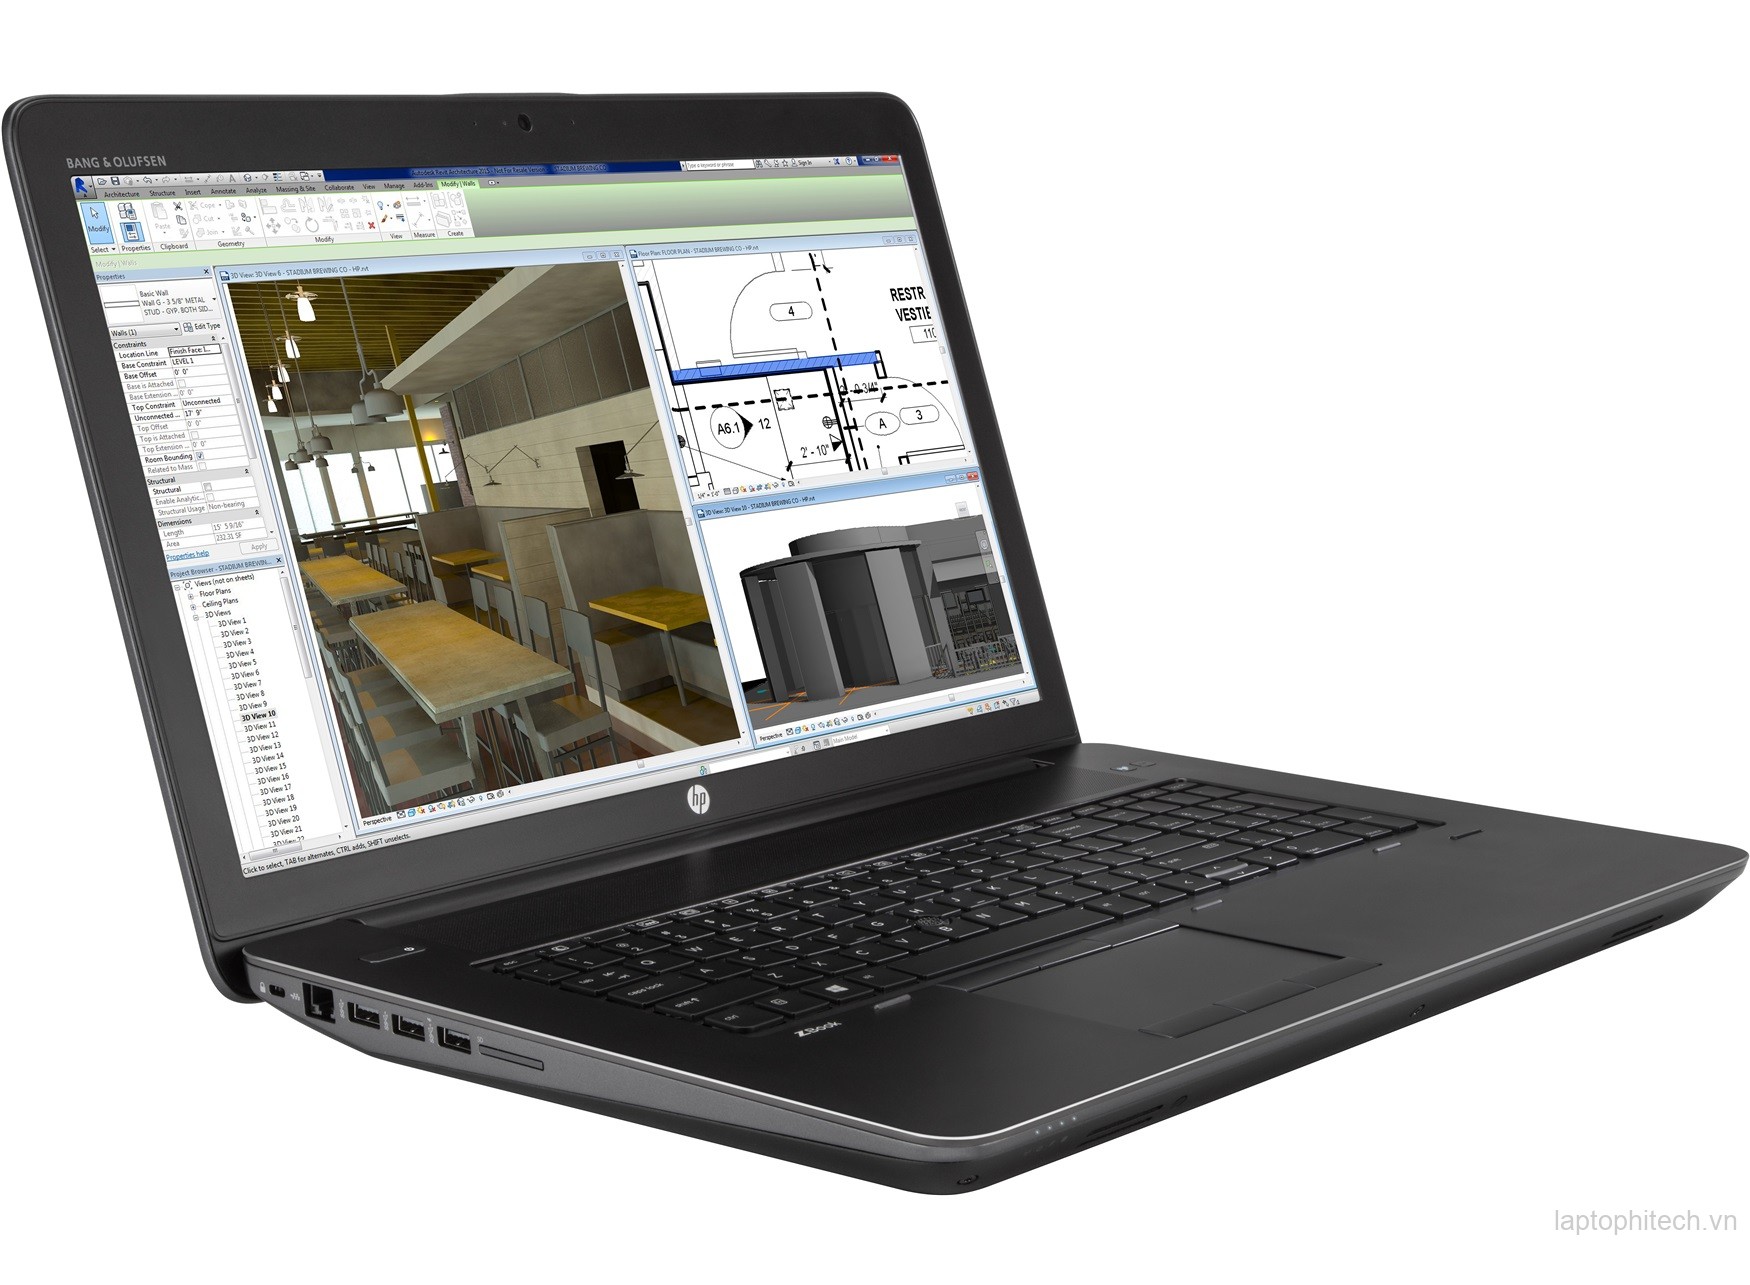 Laptop Cũ HP ZBook 17 G3 - Coi7* 6820HQ - Ram16Gb -  SSD 240GB - Nvidia Quadro M3000M - MH 17.3 Full HD 